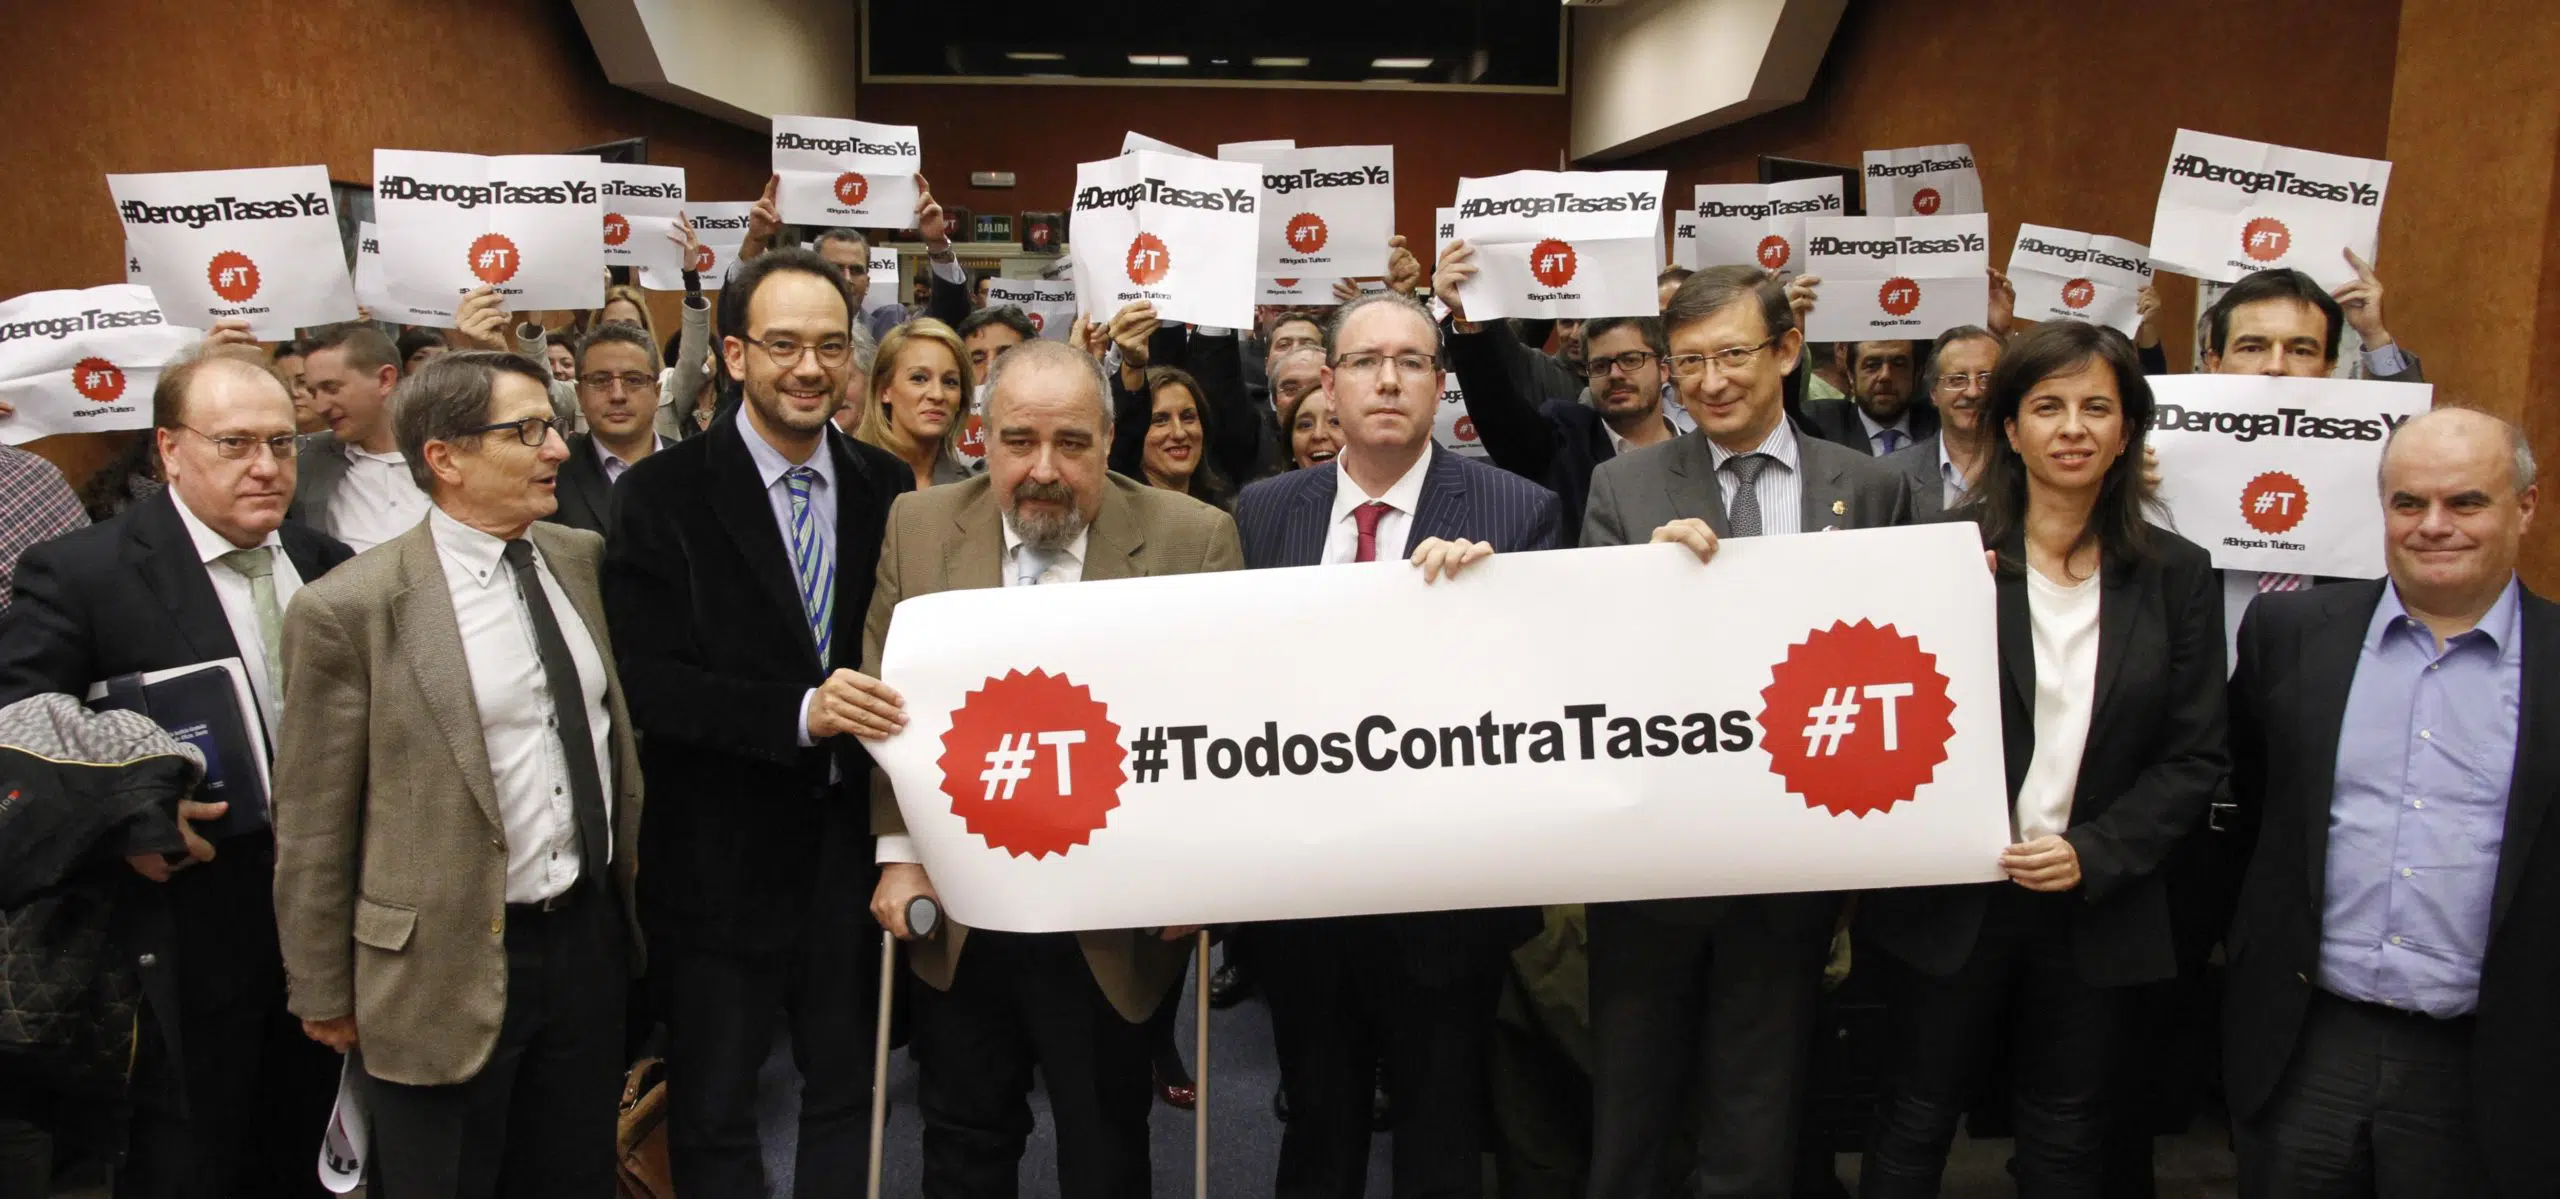 Antonio Hernando, portavoz del PSOE en el Congreso: “Si ganamos las elecciones, derogamos las tasas”